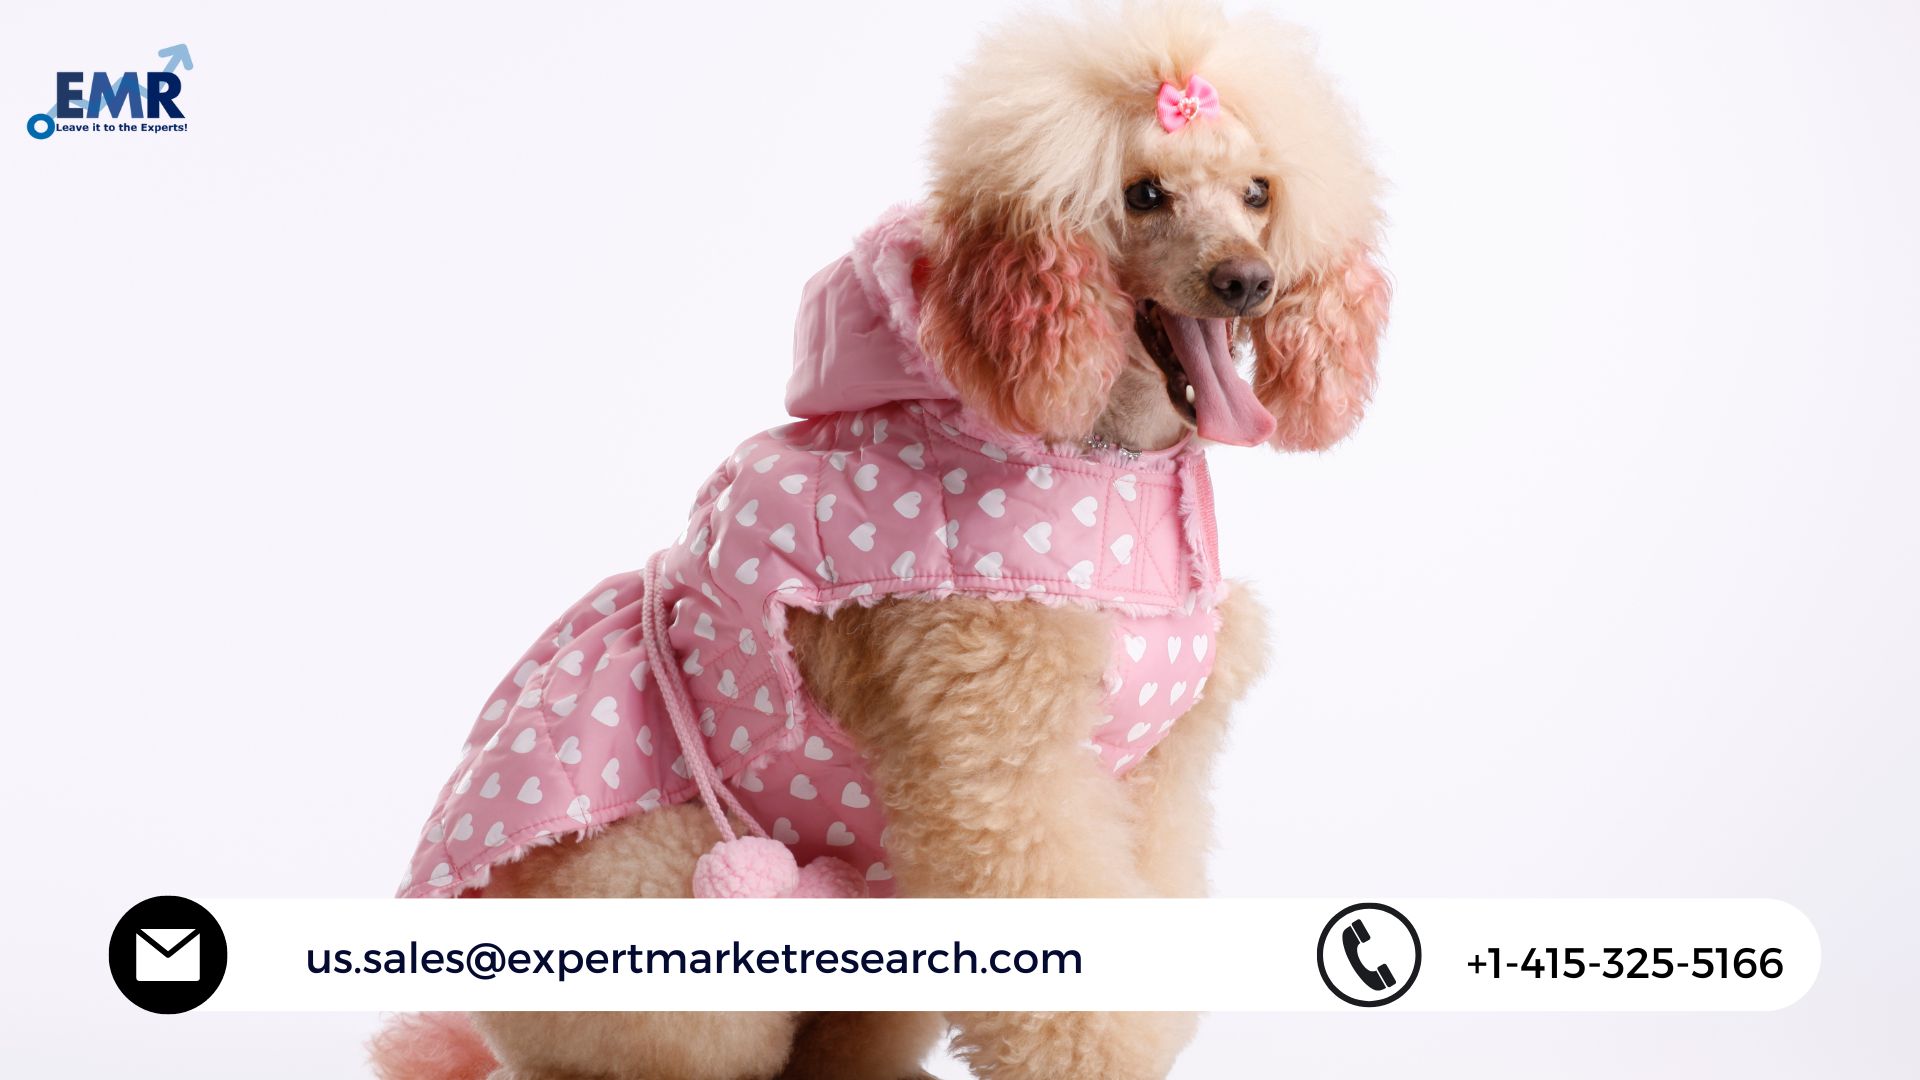 Pet Clothing Market